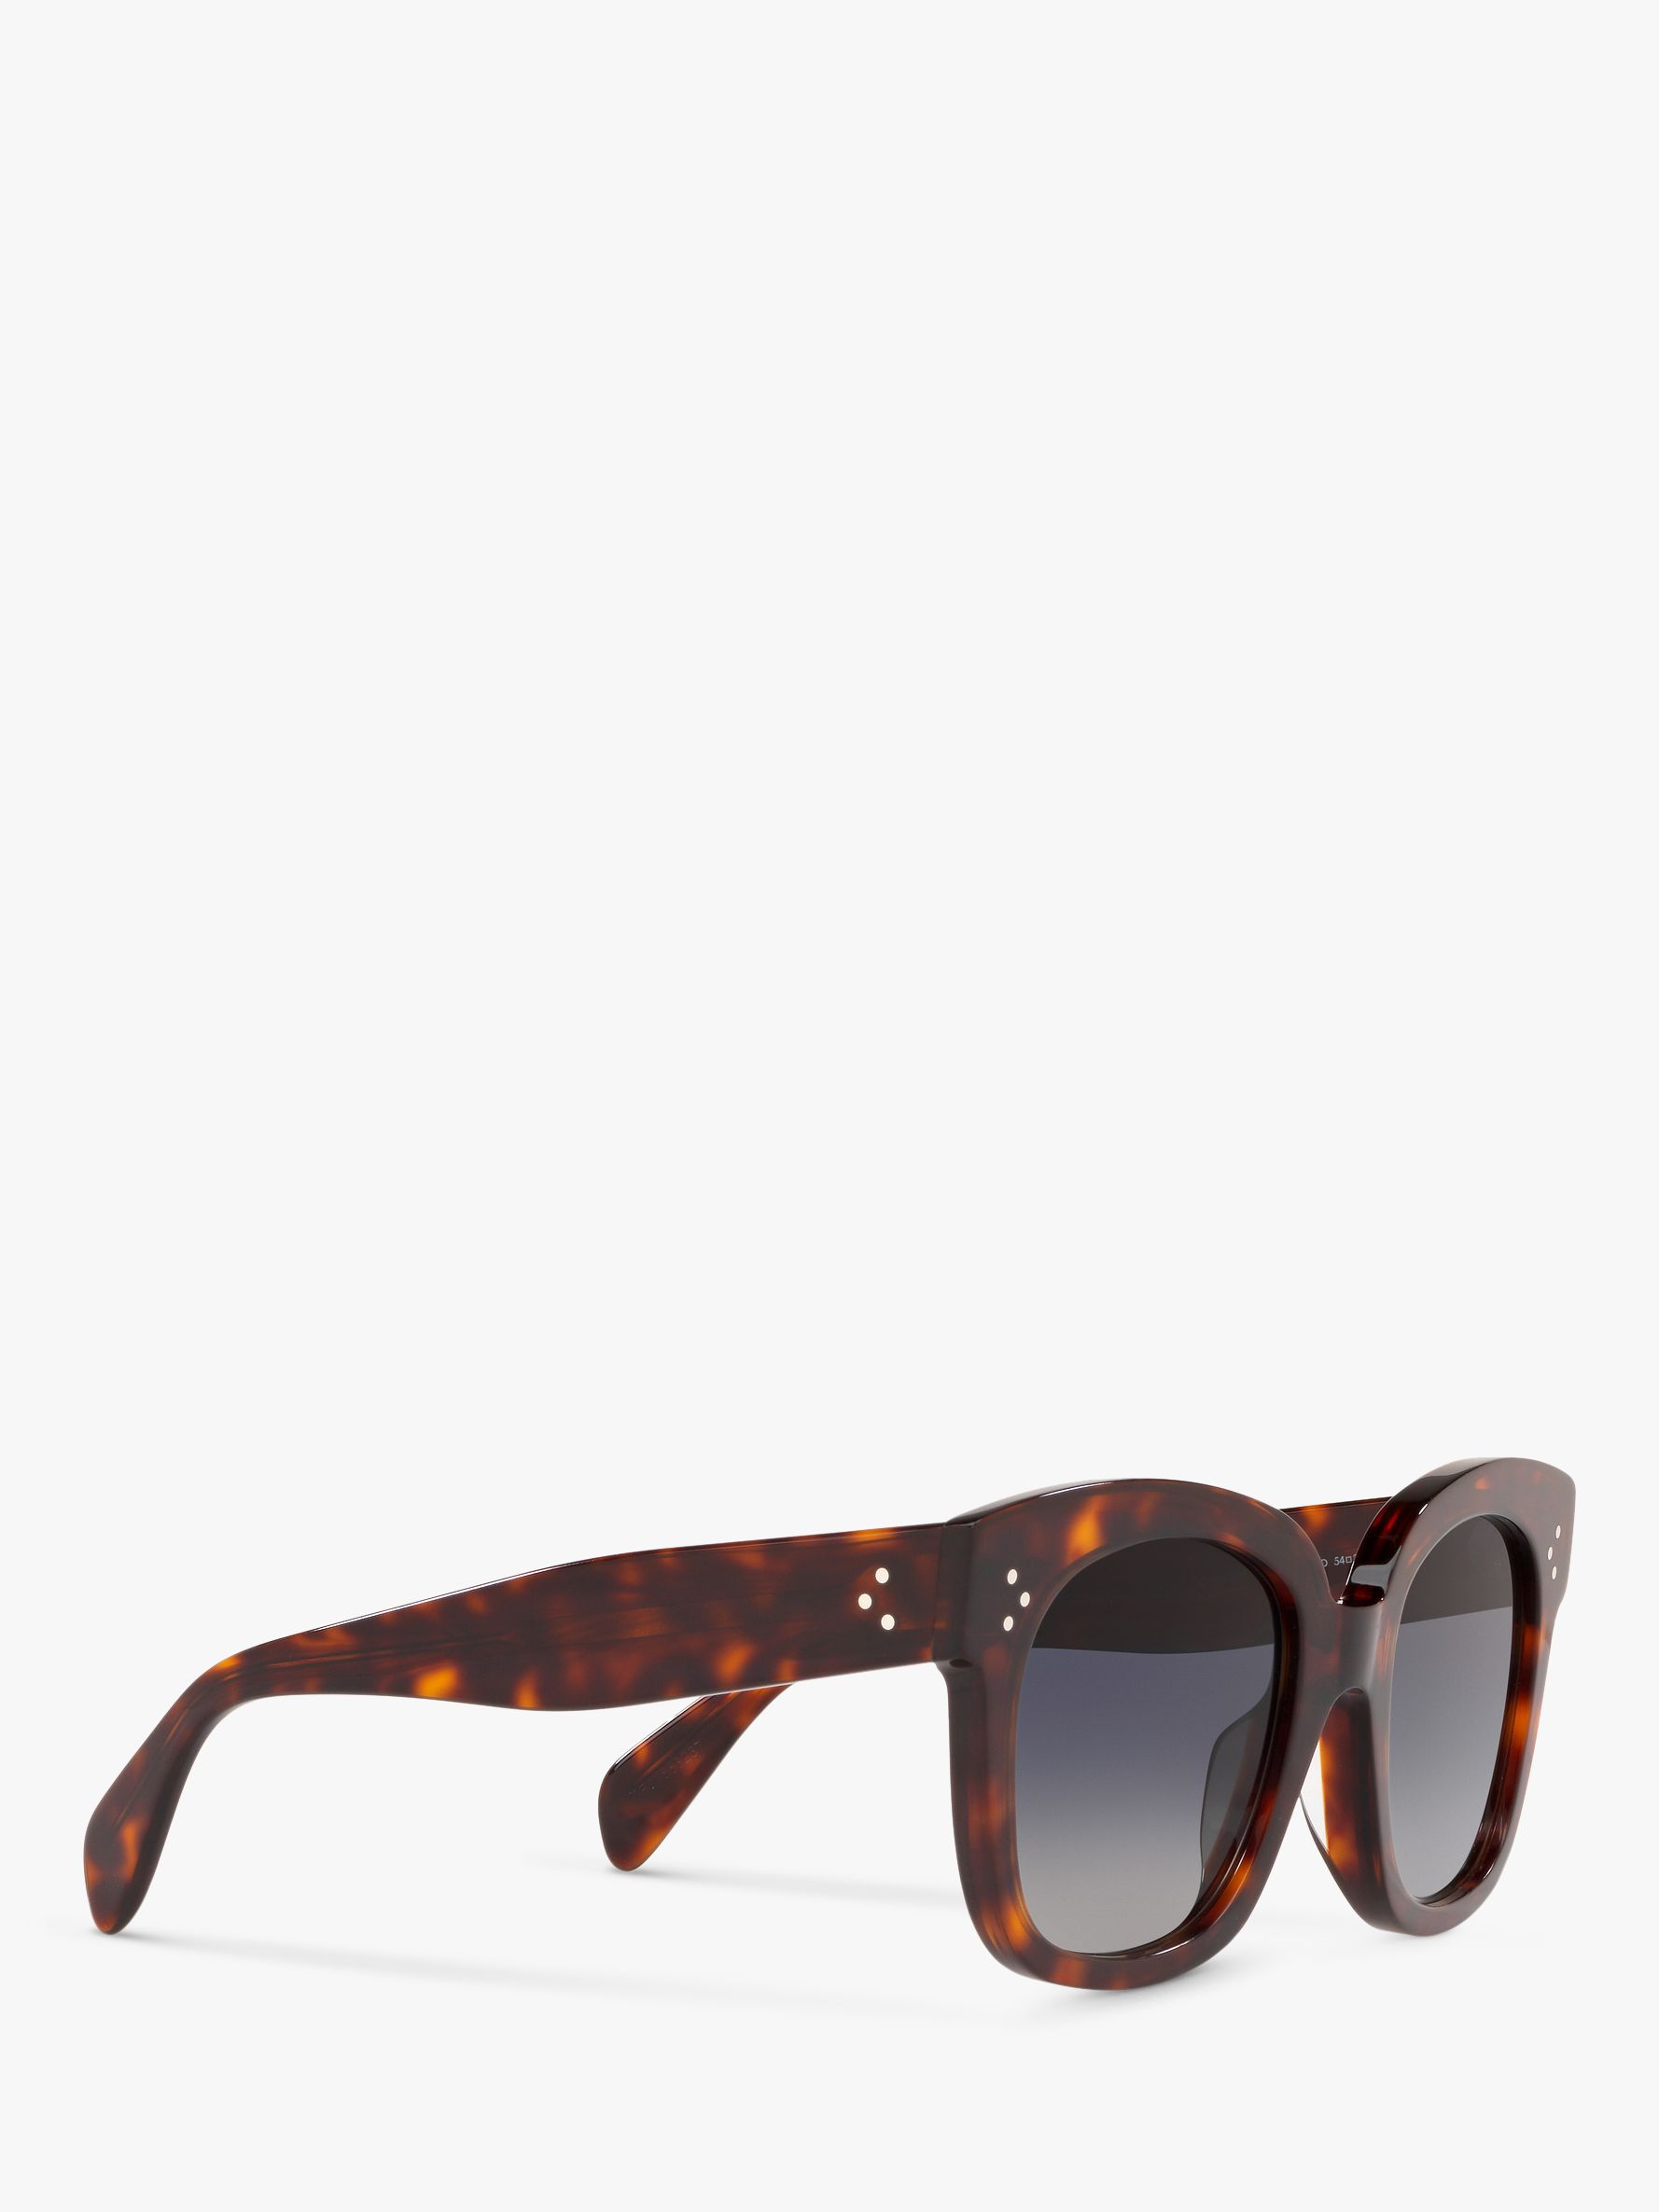 Céline CL4002UN Women's Rectangular Sunglasses, Tortoise/Blue Gradient